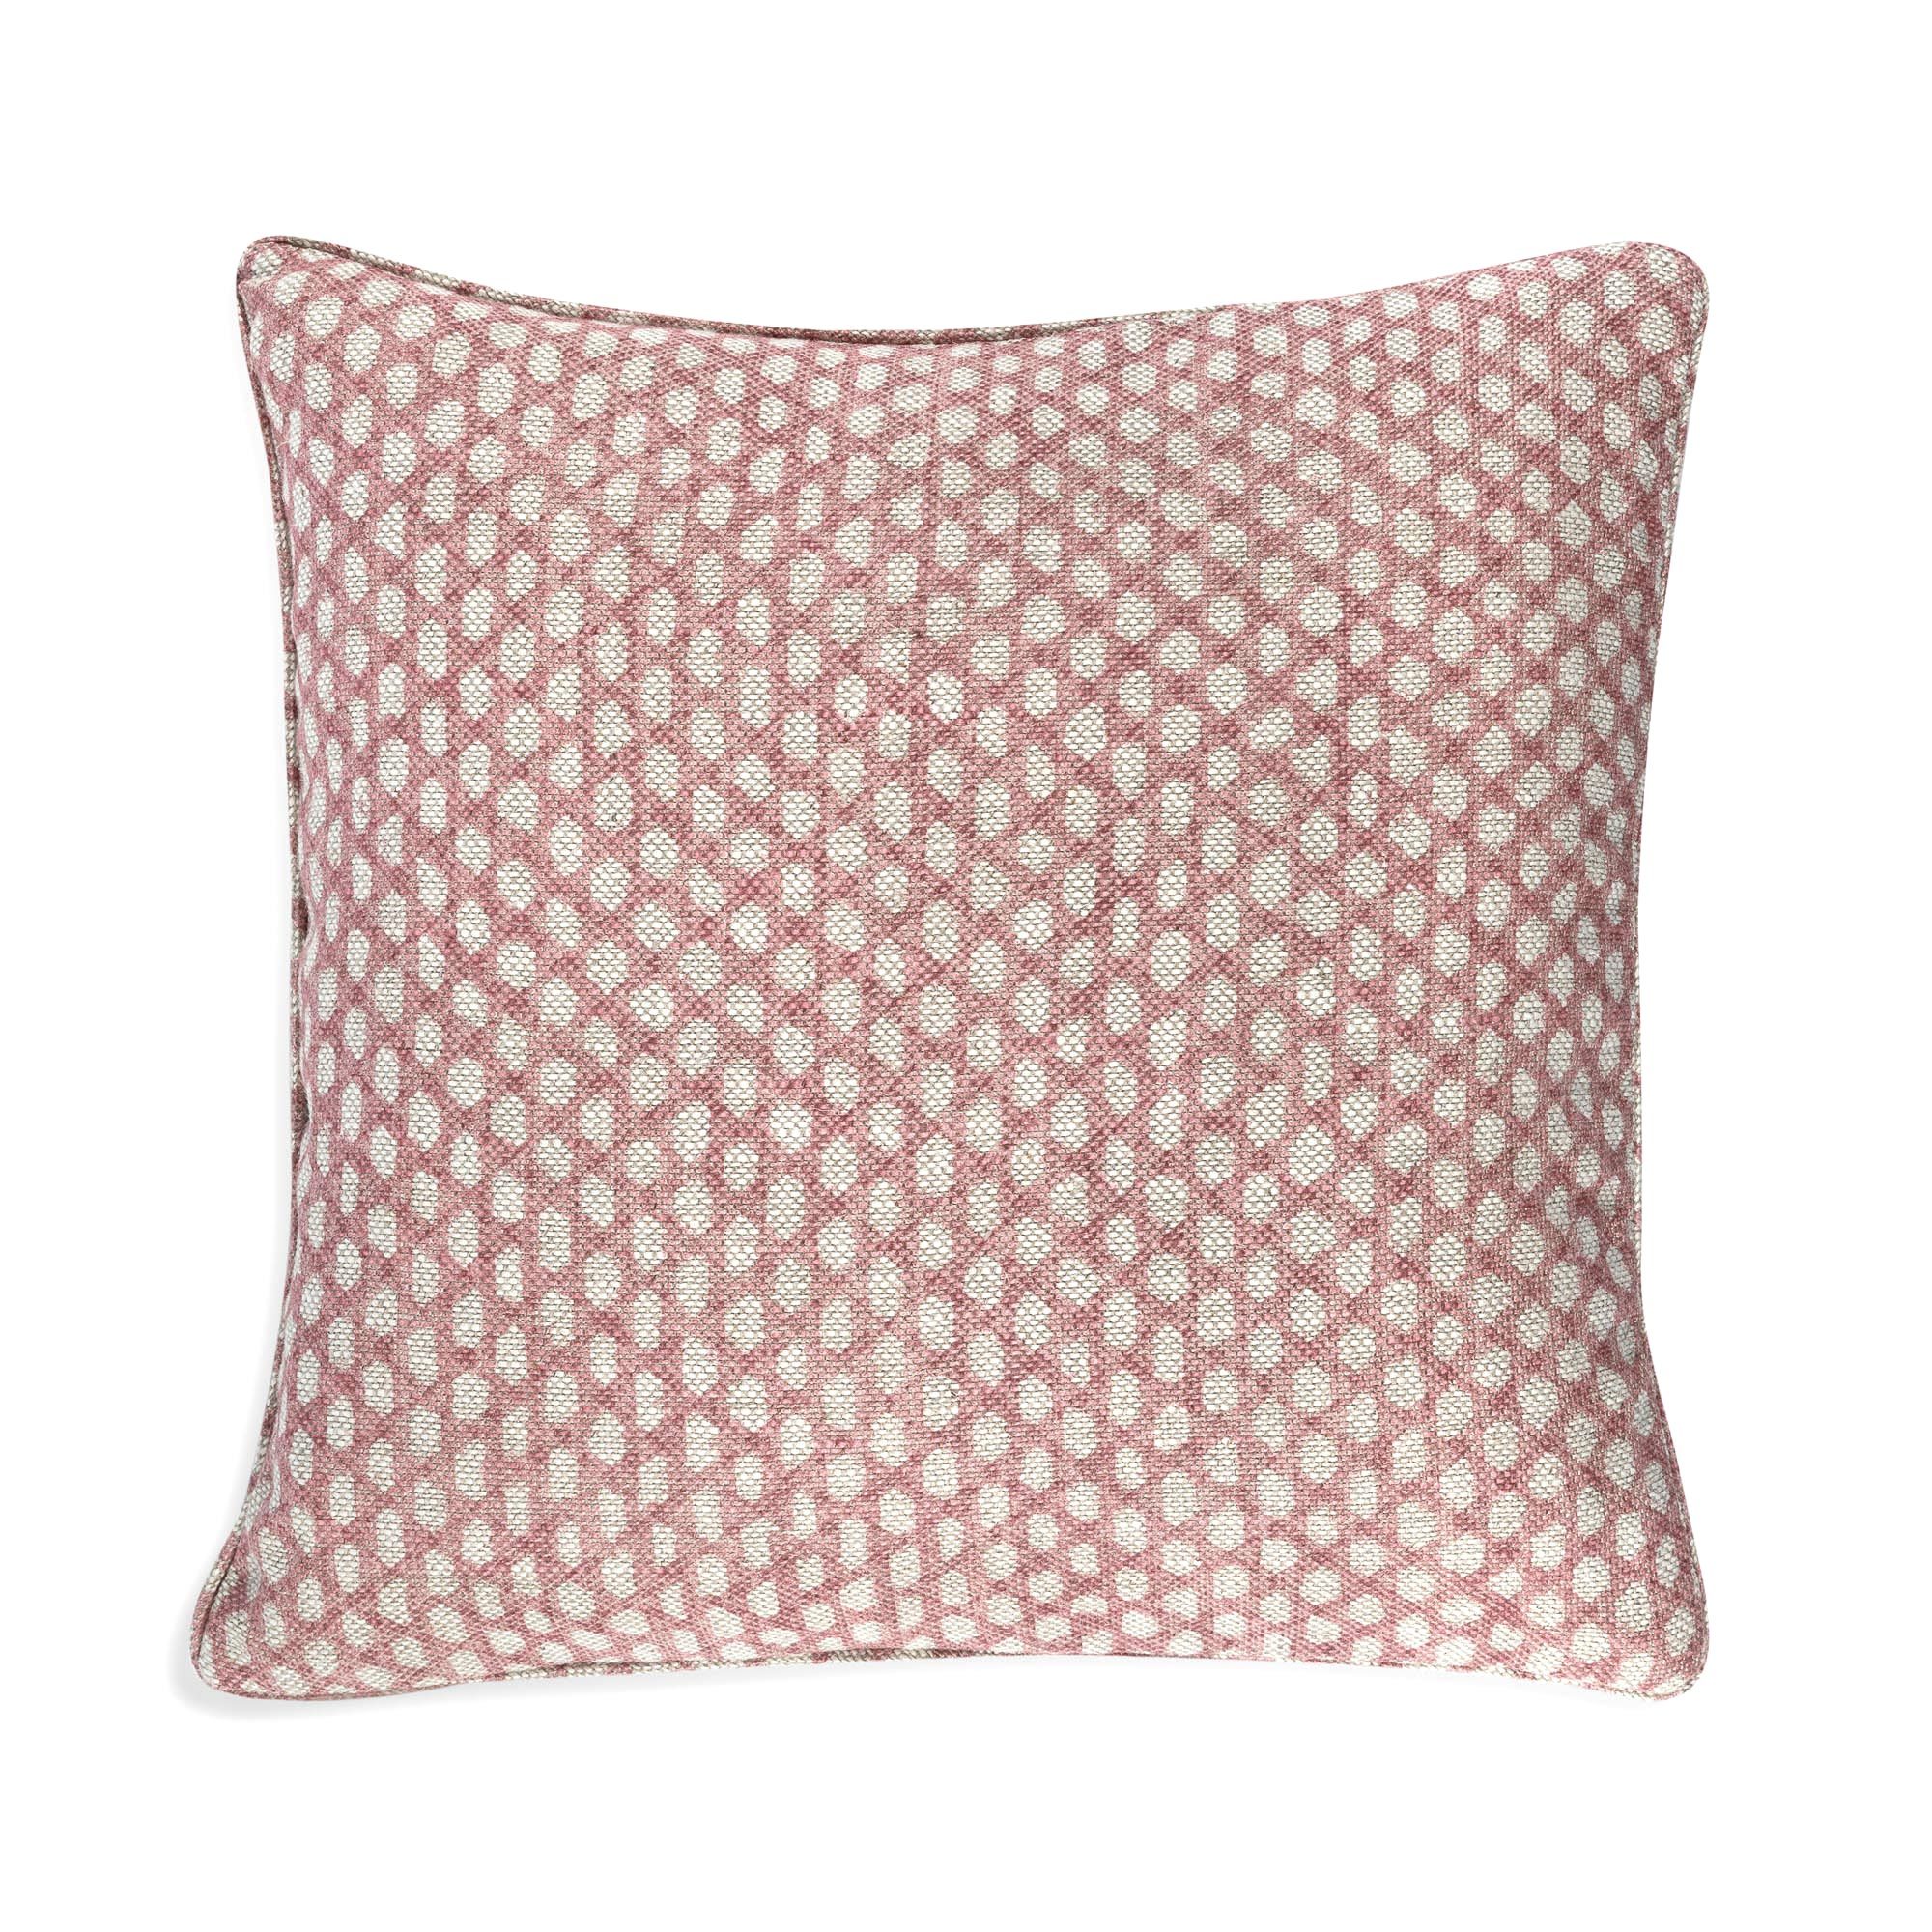 Cushion in Pink Wicker